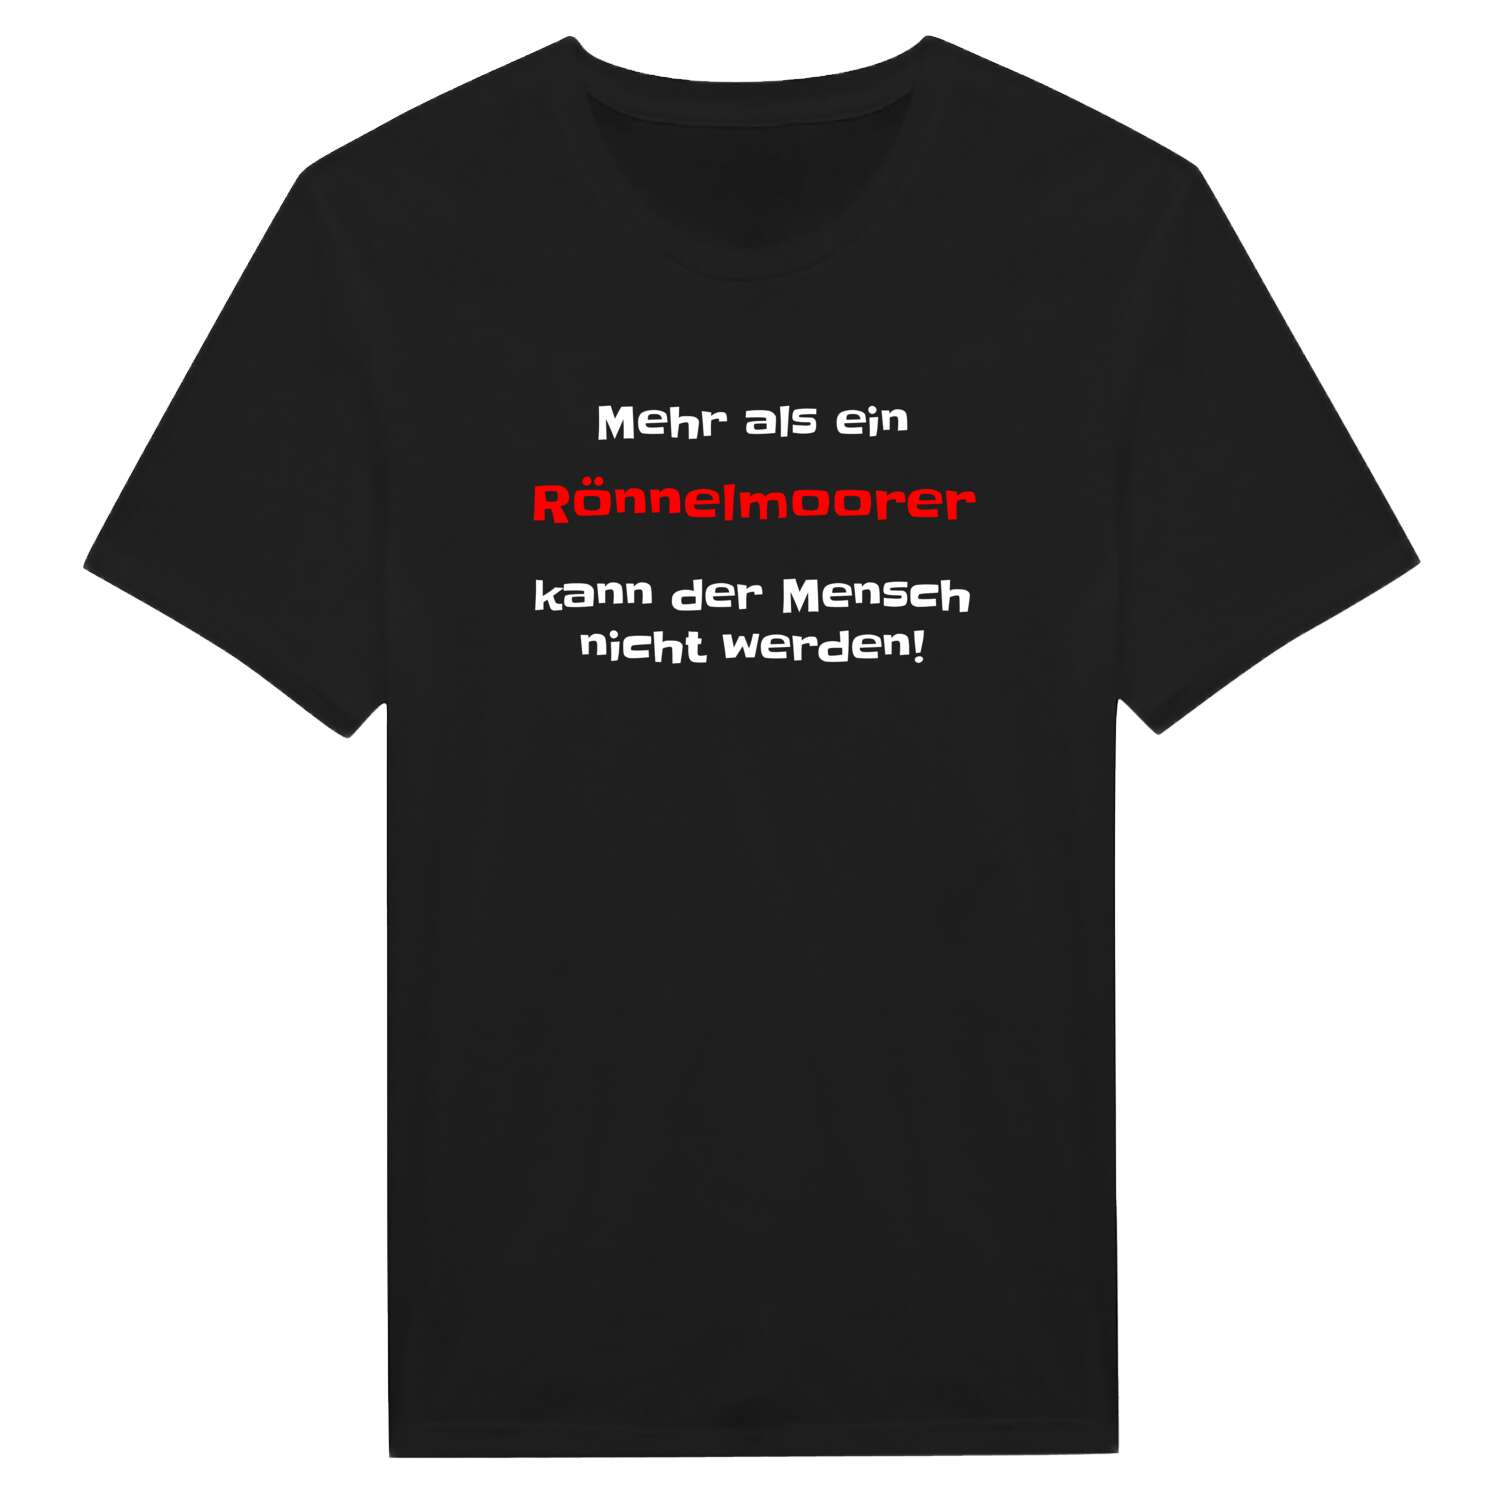 Rönnelmoor T-Shirt »Mehr als ein«